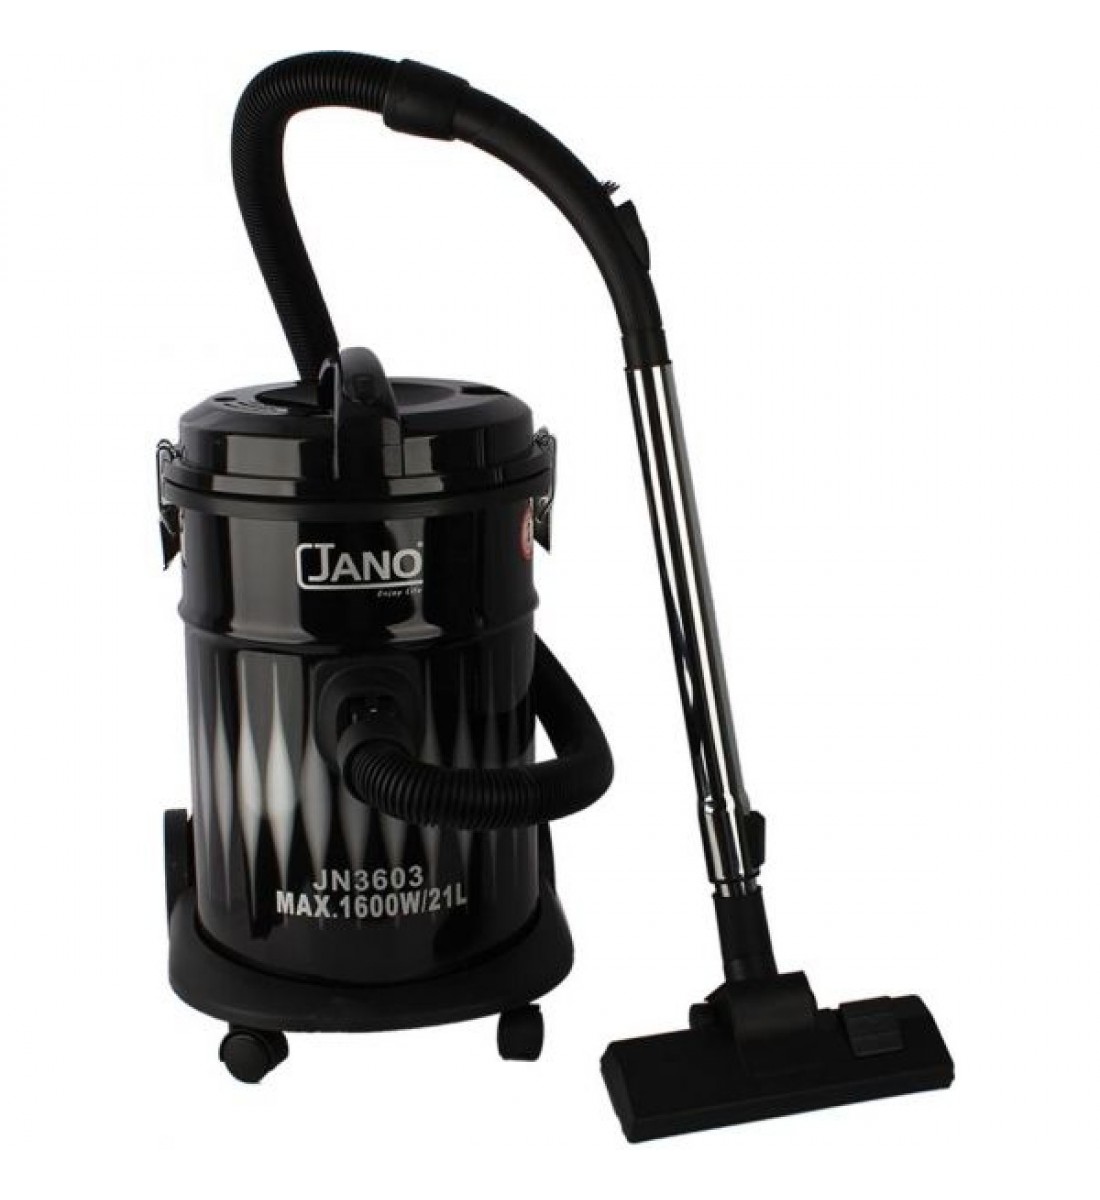 Jano Vacuum Cleaner - 1600 Watt - 21 Liters - JN3603